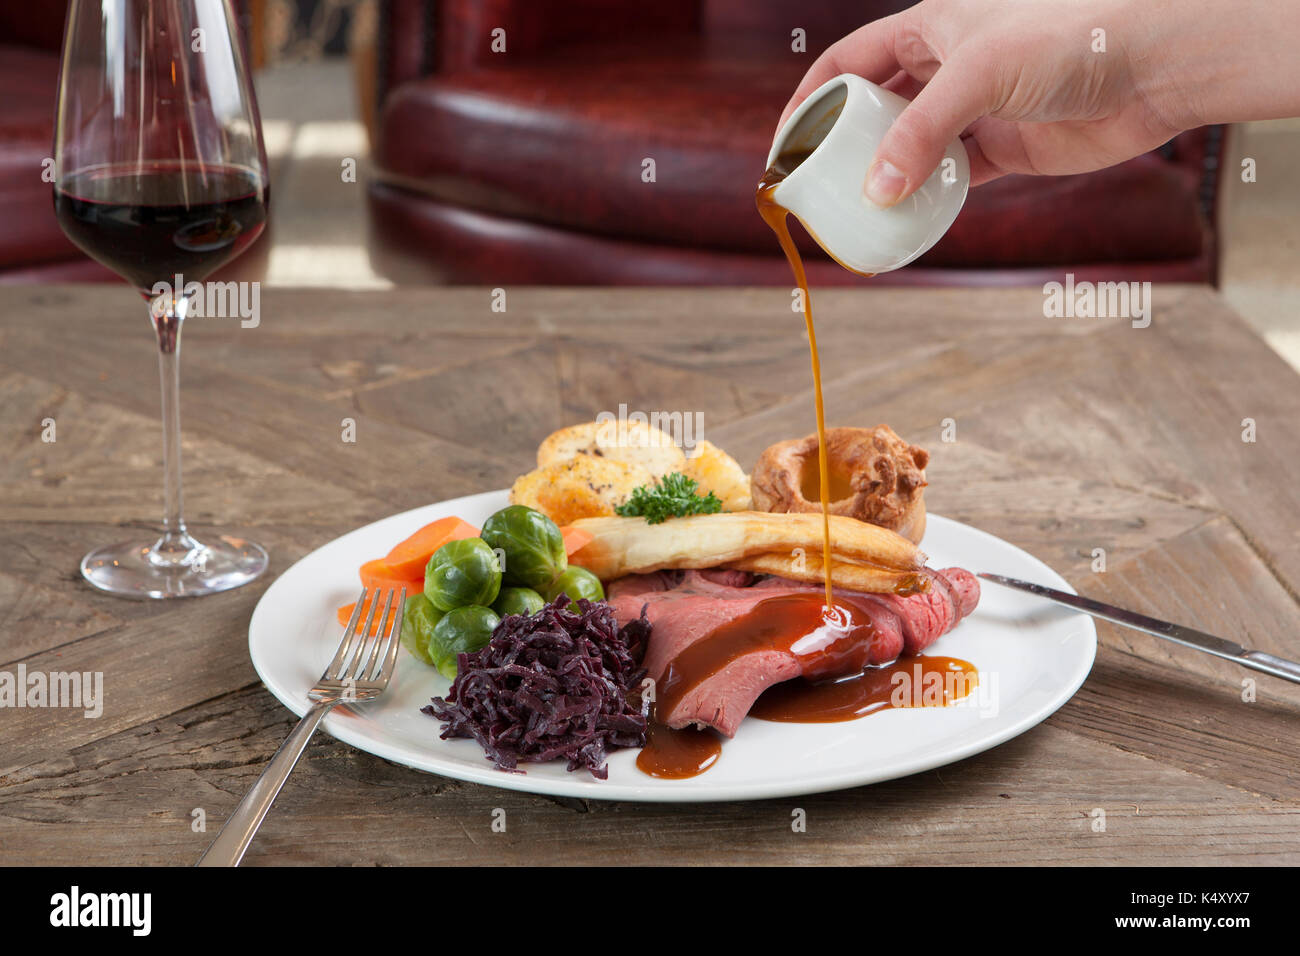 Cena de carne asada con salsa en un plato sobre una mesa de madera Foto de stock